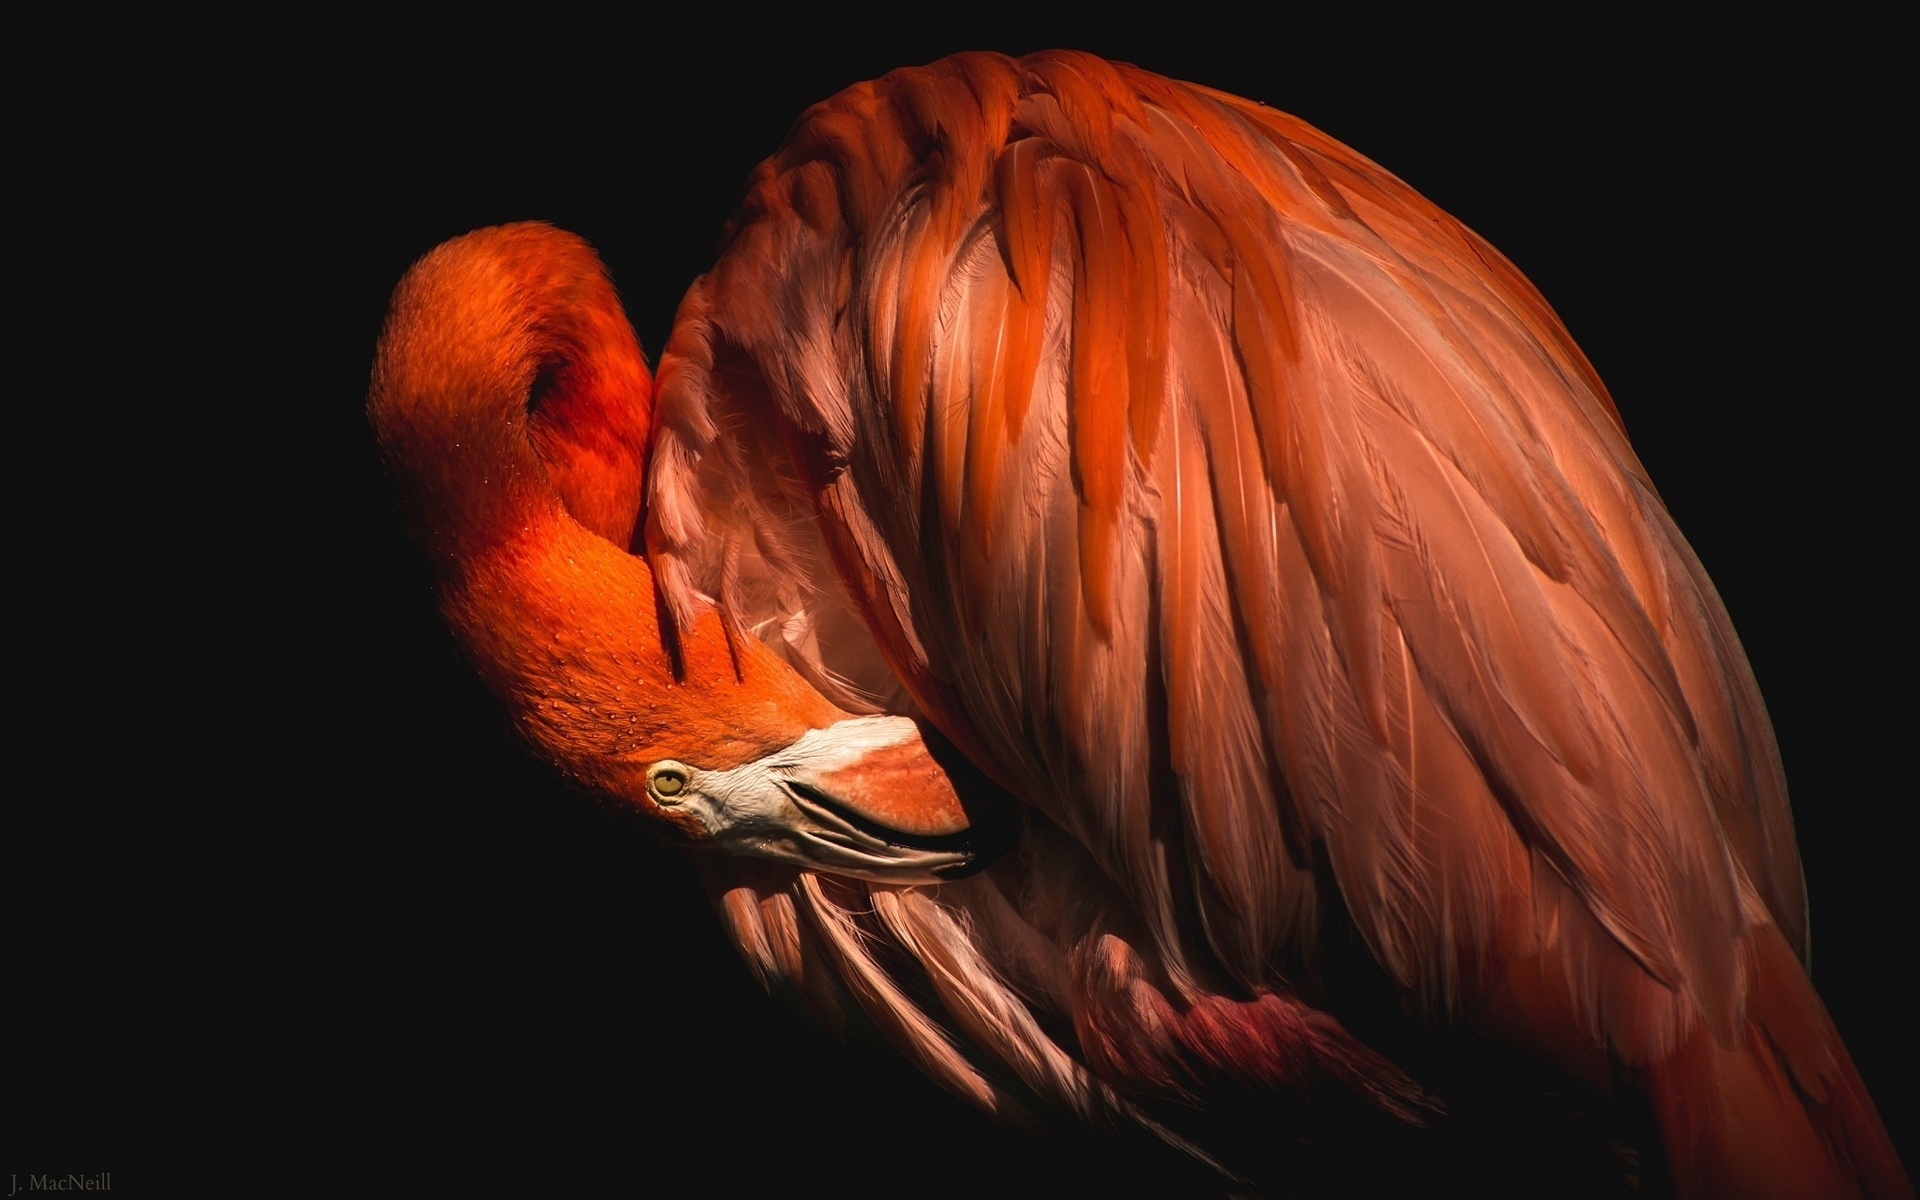 Descarga gratuita de fondo de pantalla para móvil de Flamenco, Aves, Animales.